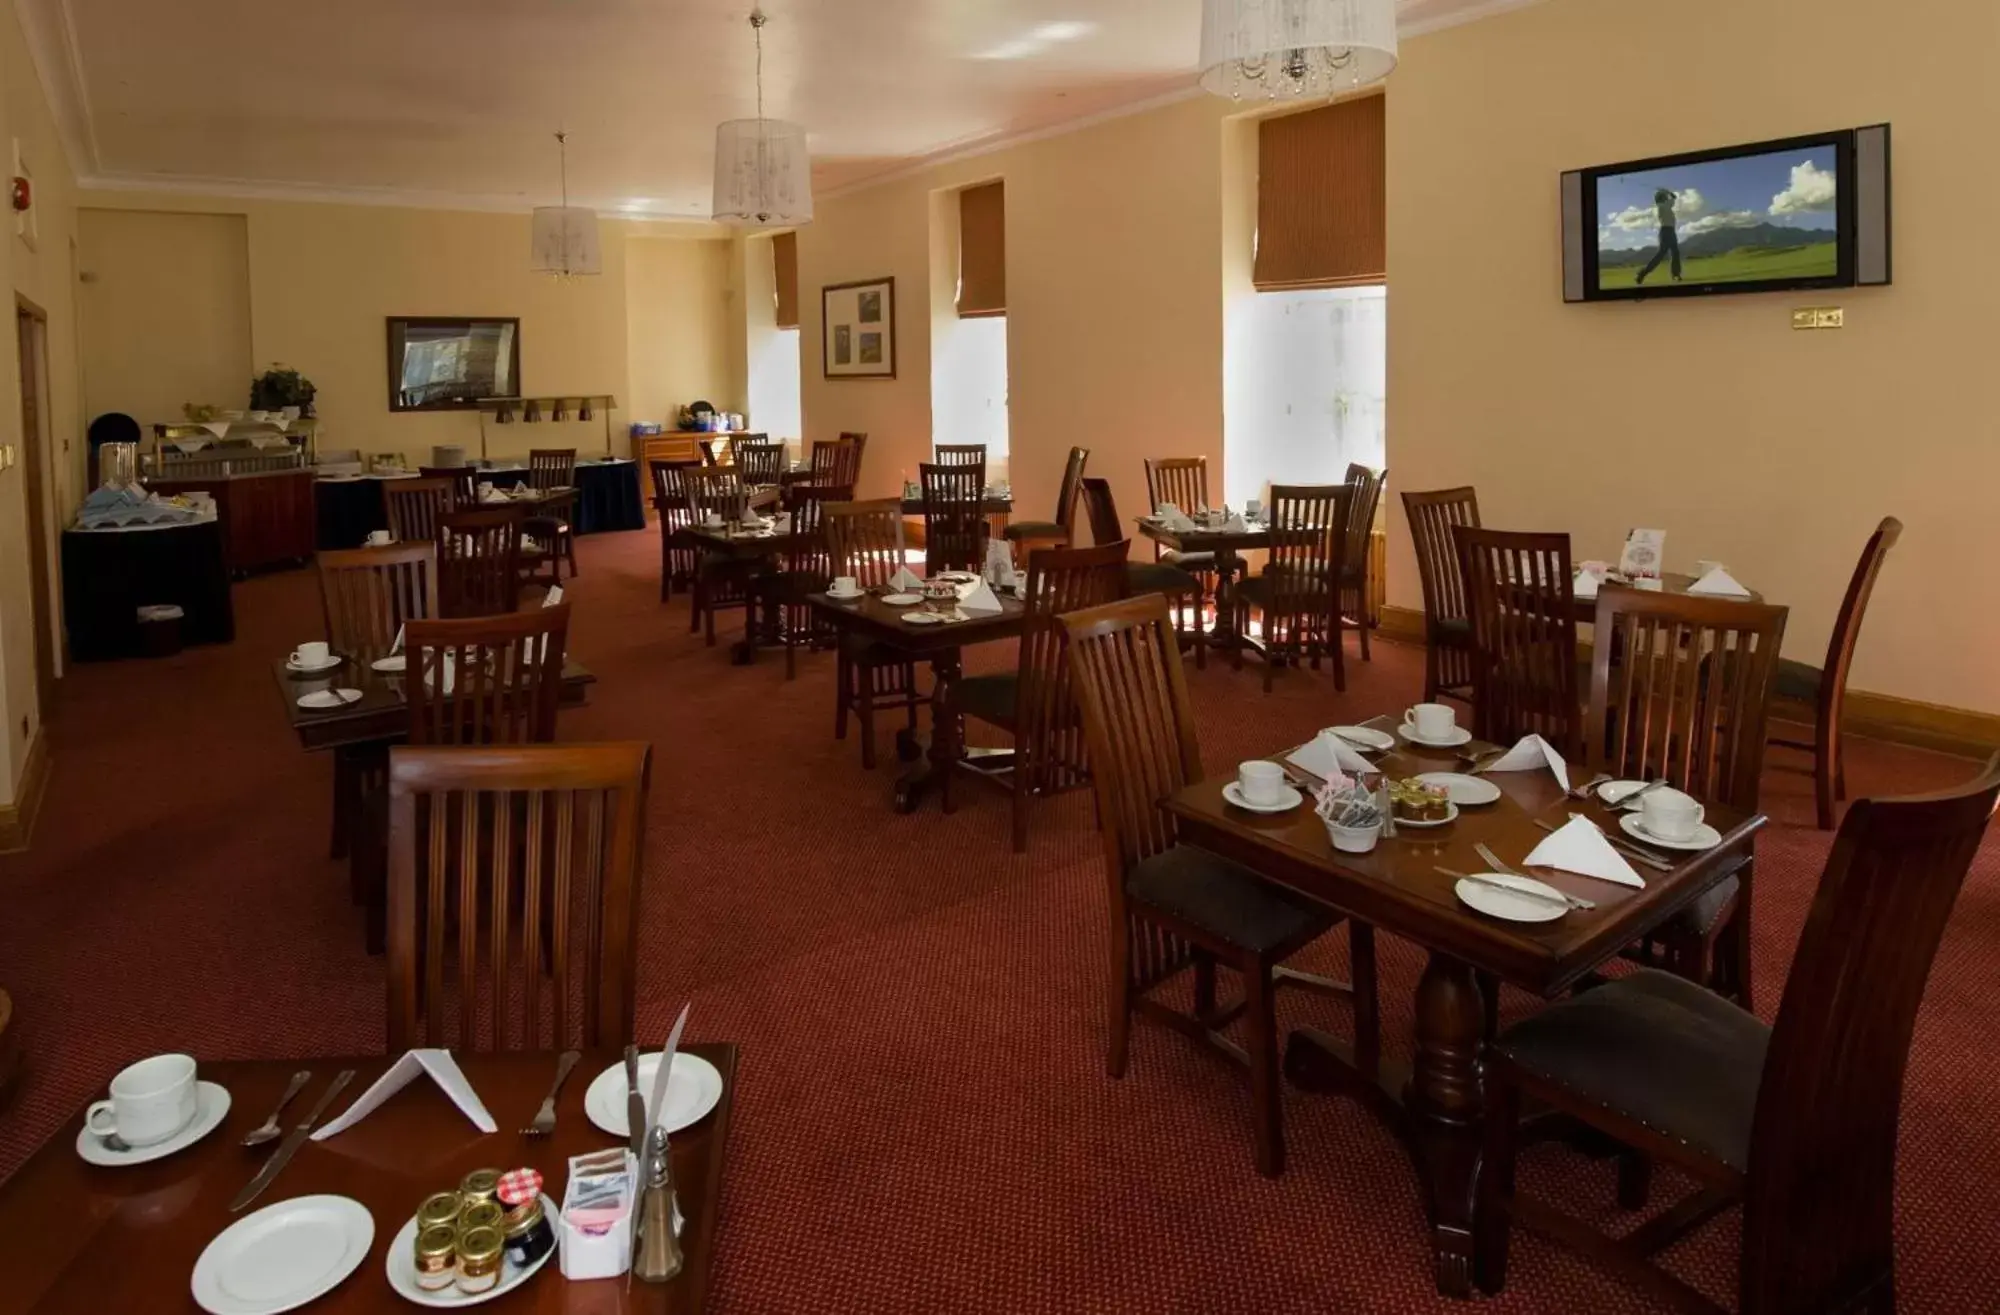 Buffet breakfast, Restaurant/Places to Eat in Aberdeen Douglas Hotel